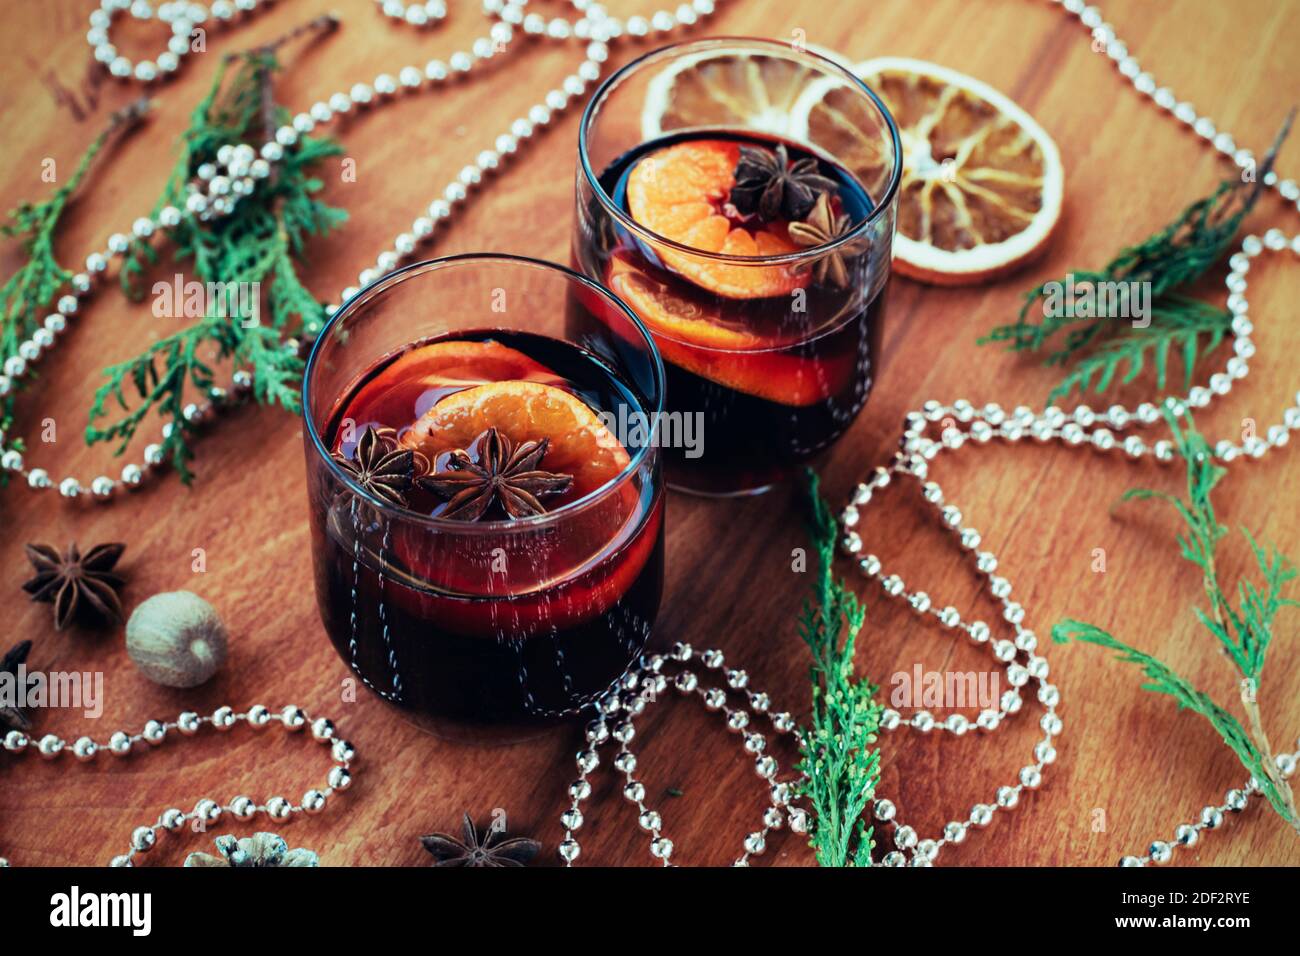 Deux verres de vin chaud aux agrumes, anis étoilé, muscade sur table en bois. Boisson de Noël de saison, décorations du nouvel an, vue du dessus. Banque D'Images